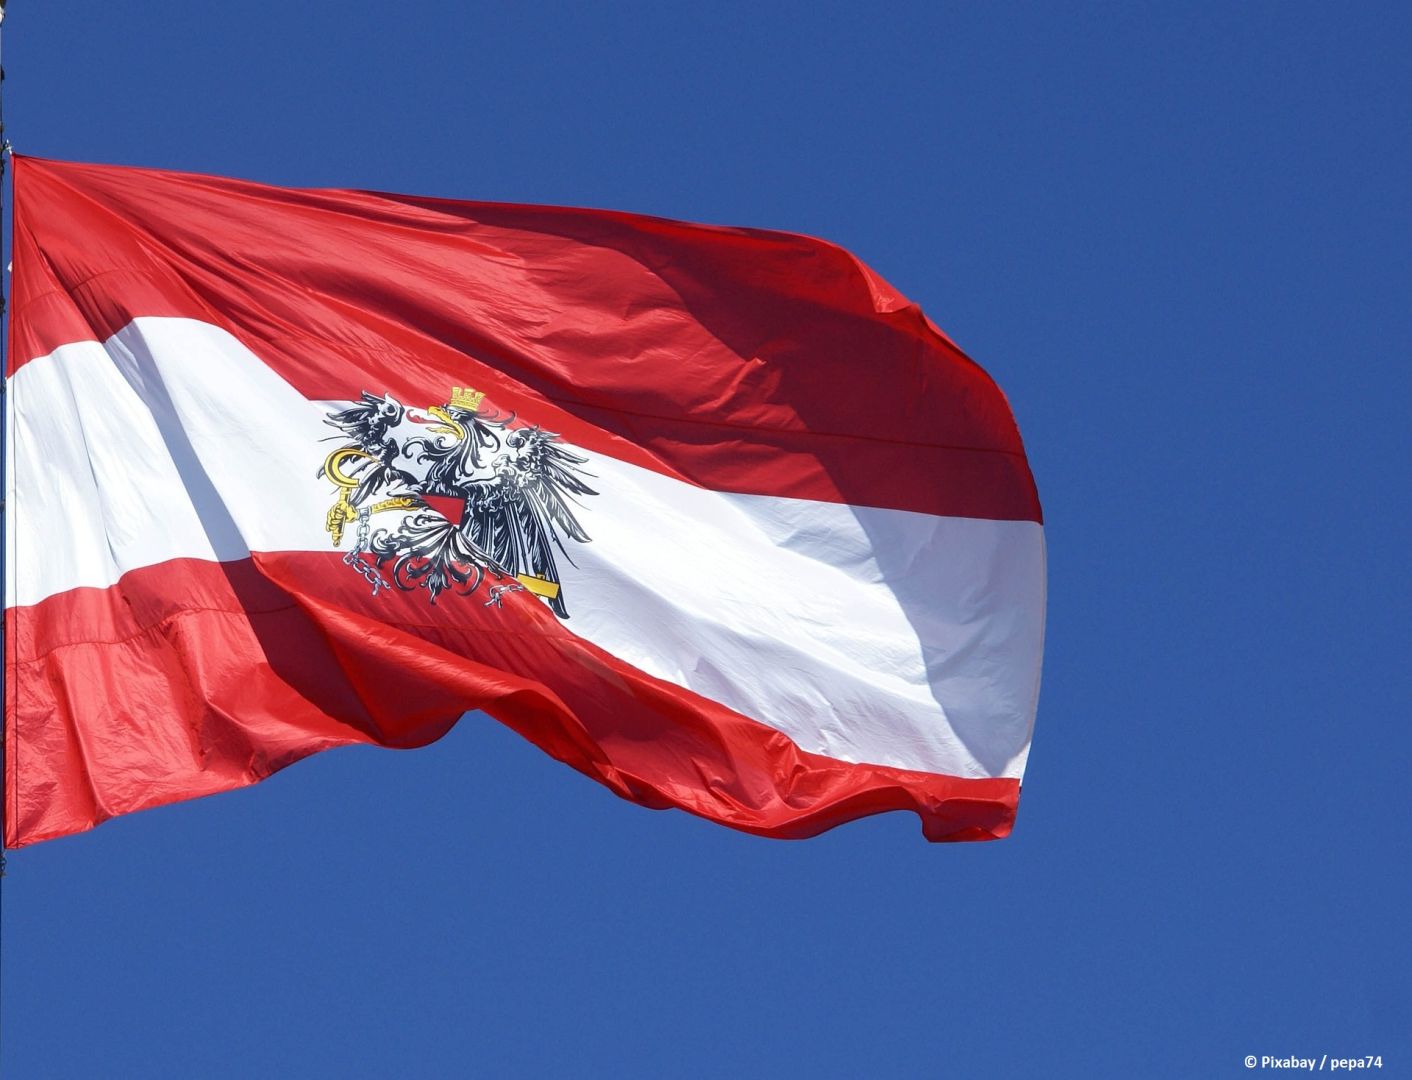 Österreich führt in Aserbaidschan konkrete Projekte in mehreren Bereichen durch - Außenministerium